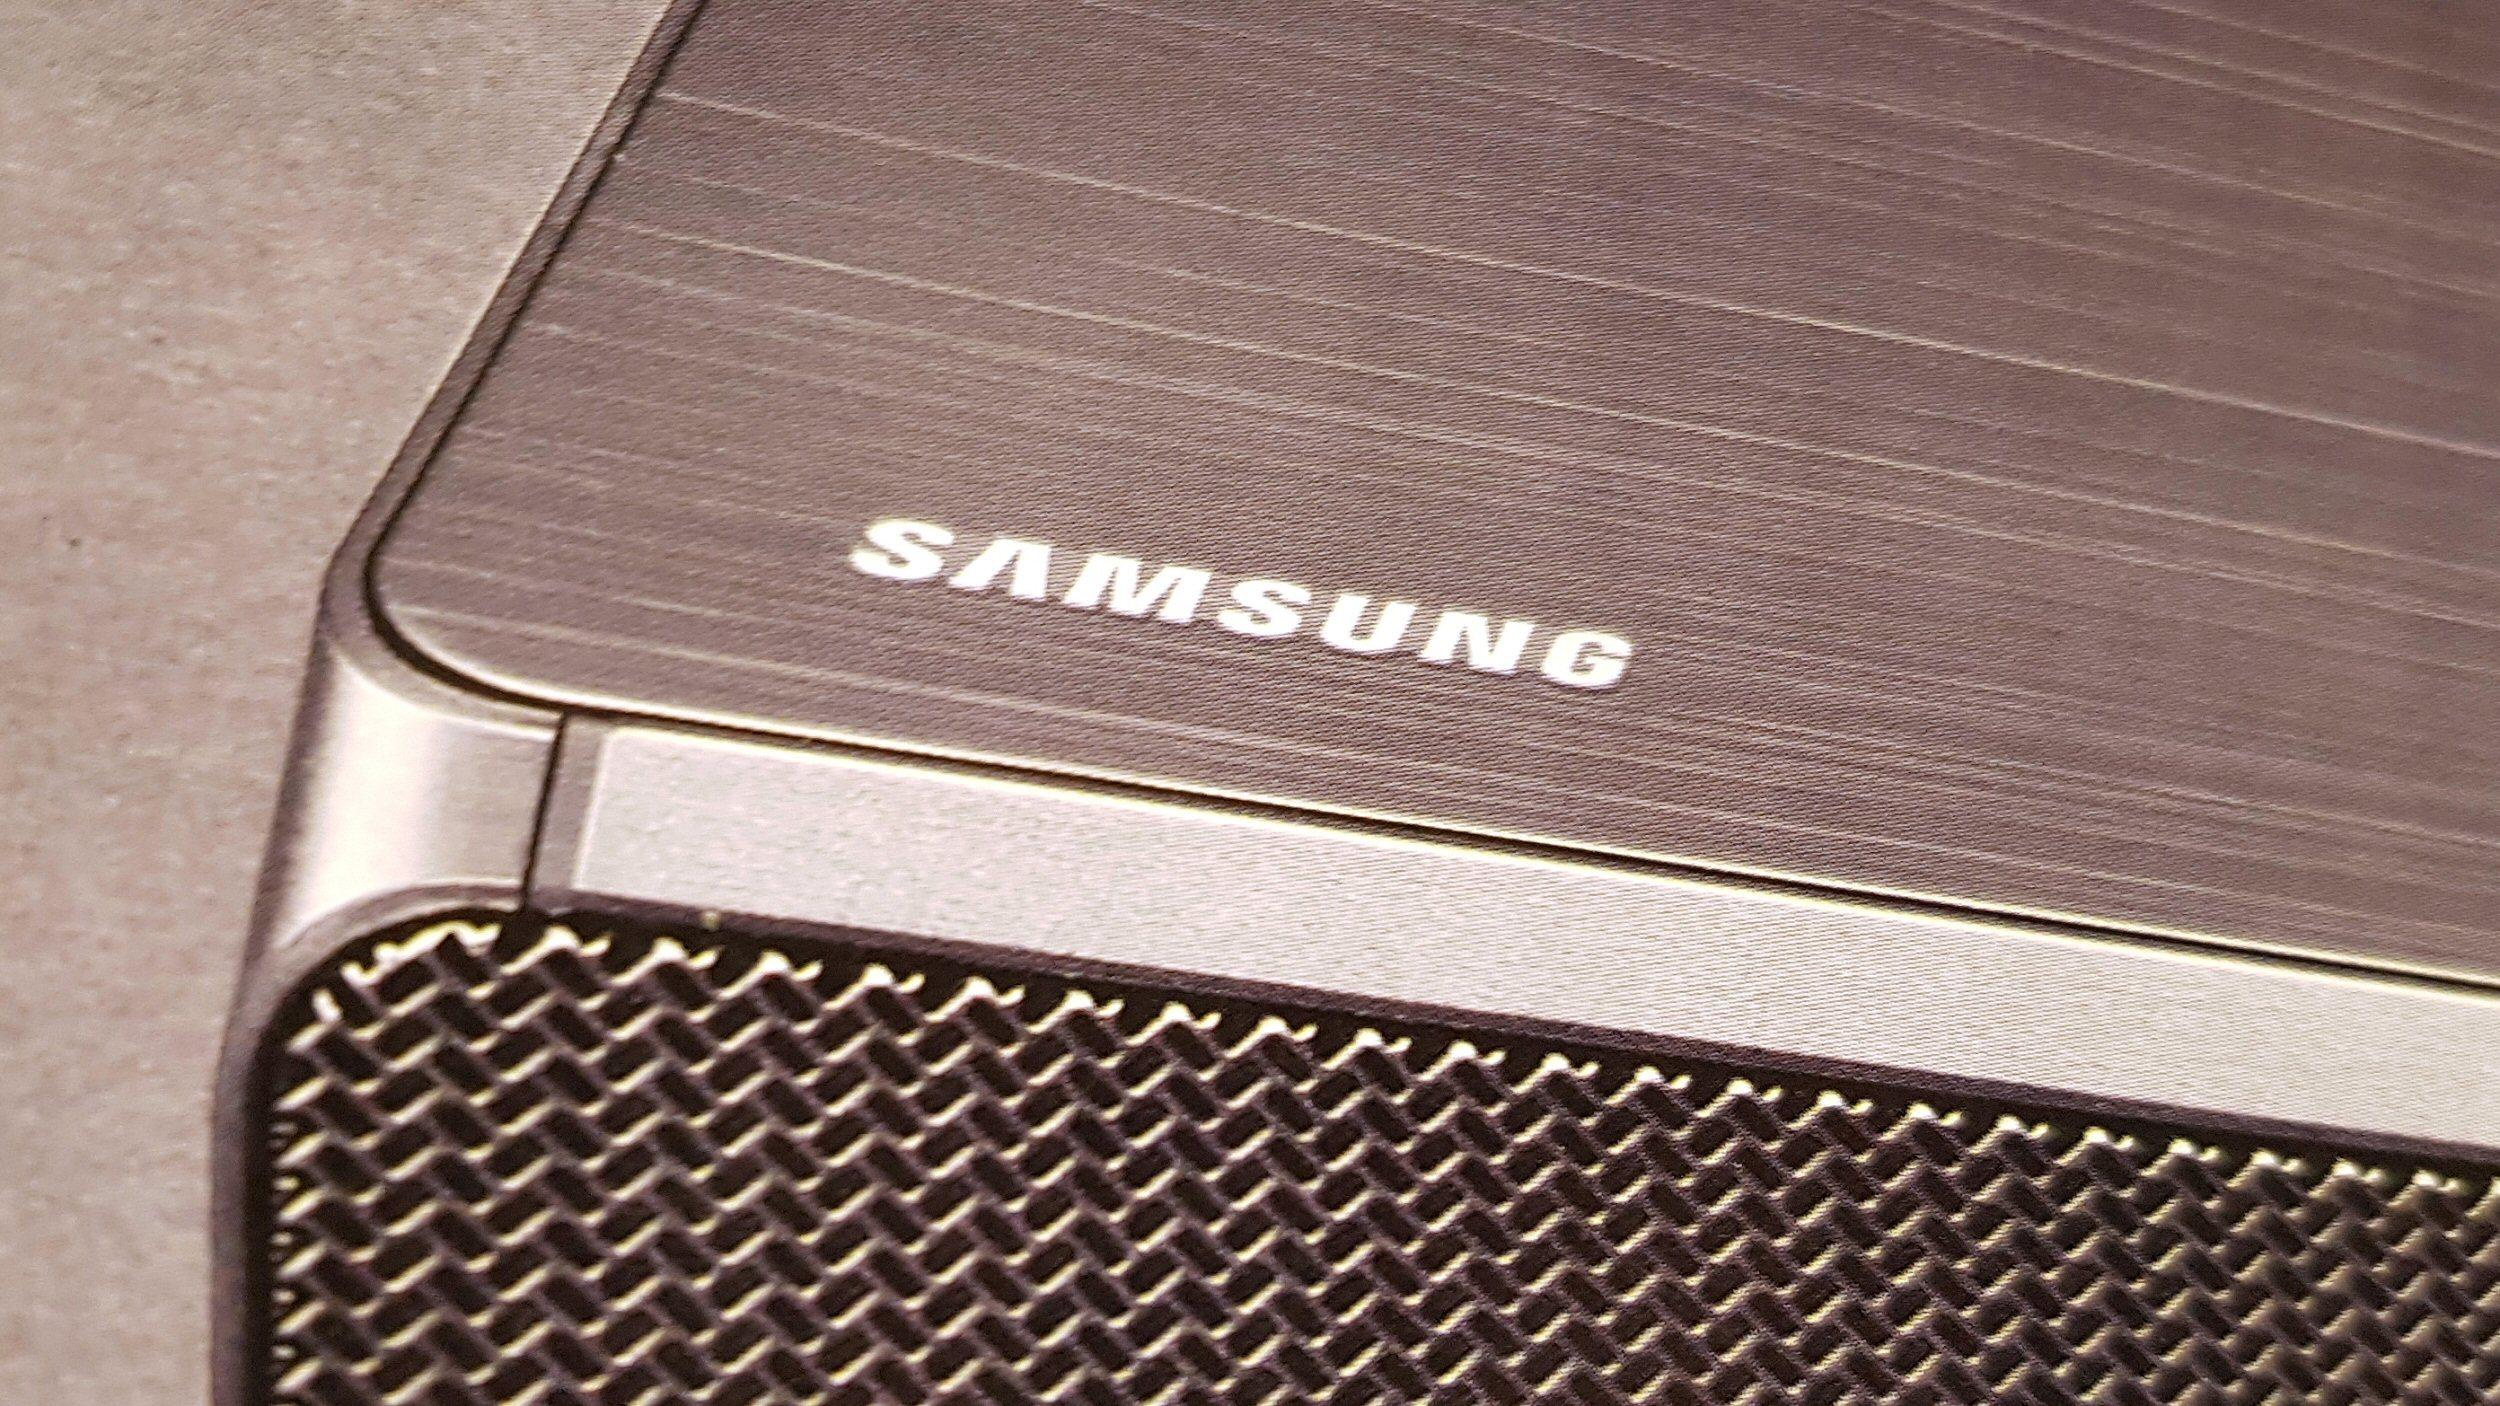 Samsungs smarthøyttaler skal komme i andre halvdel av 2018